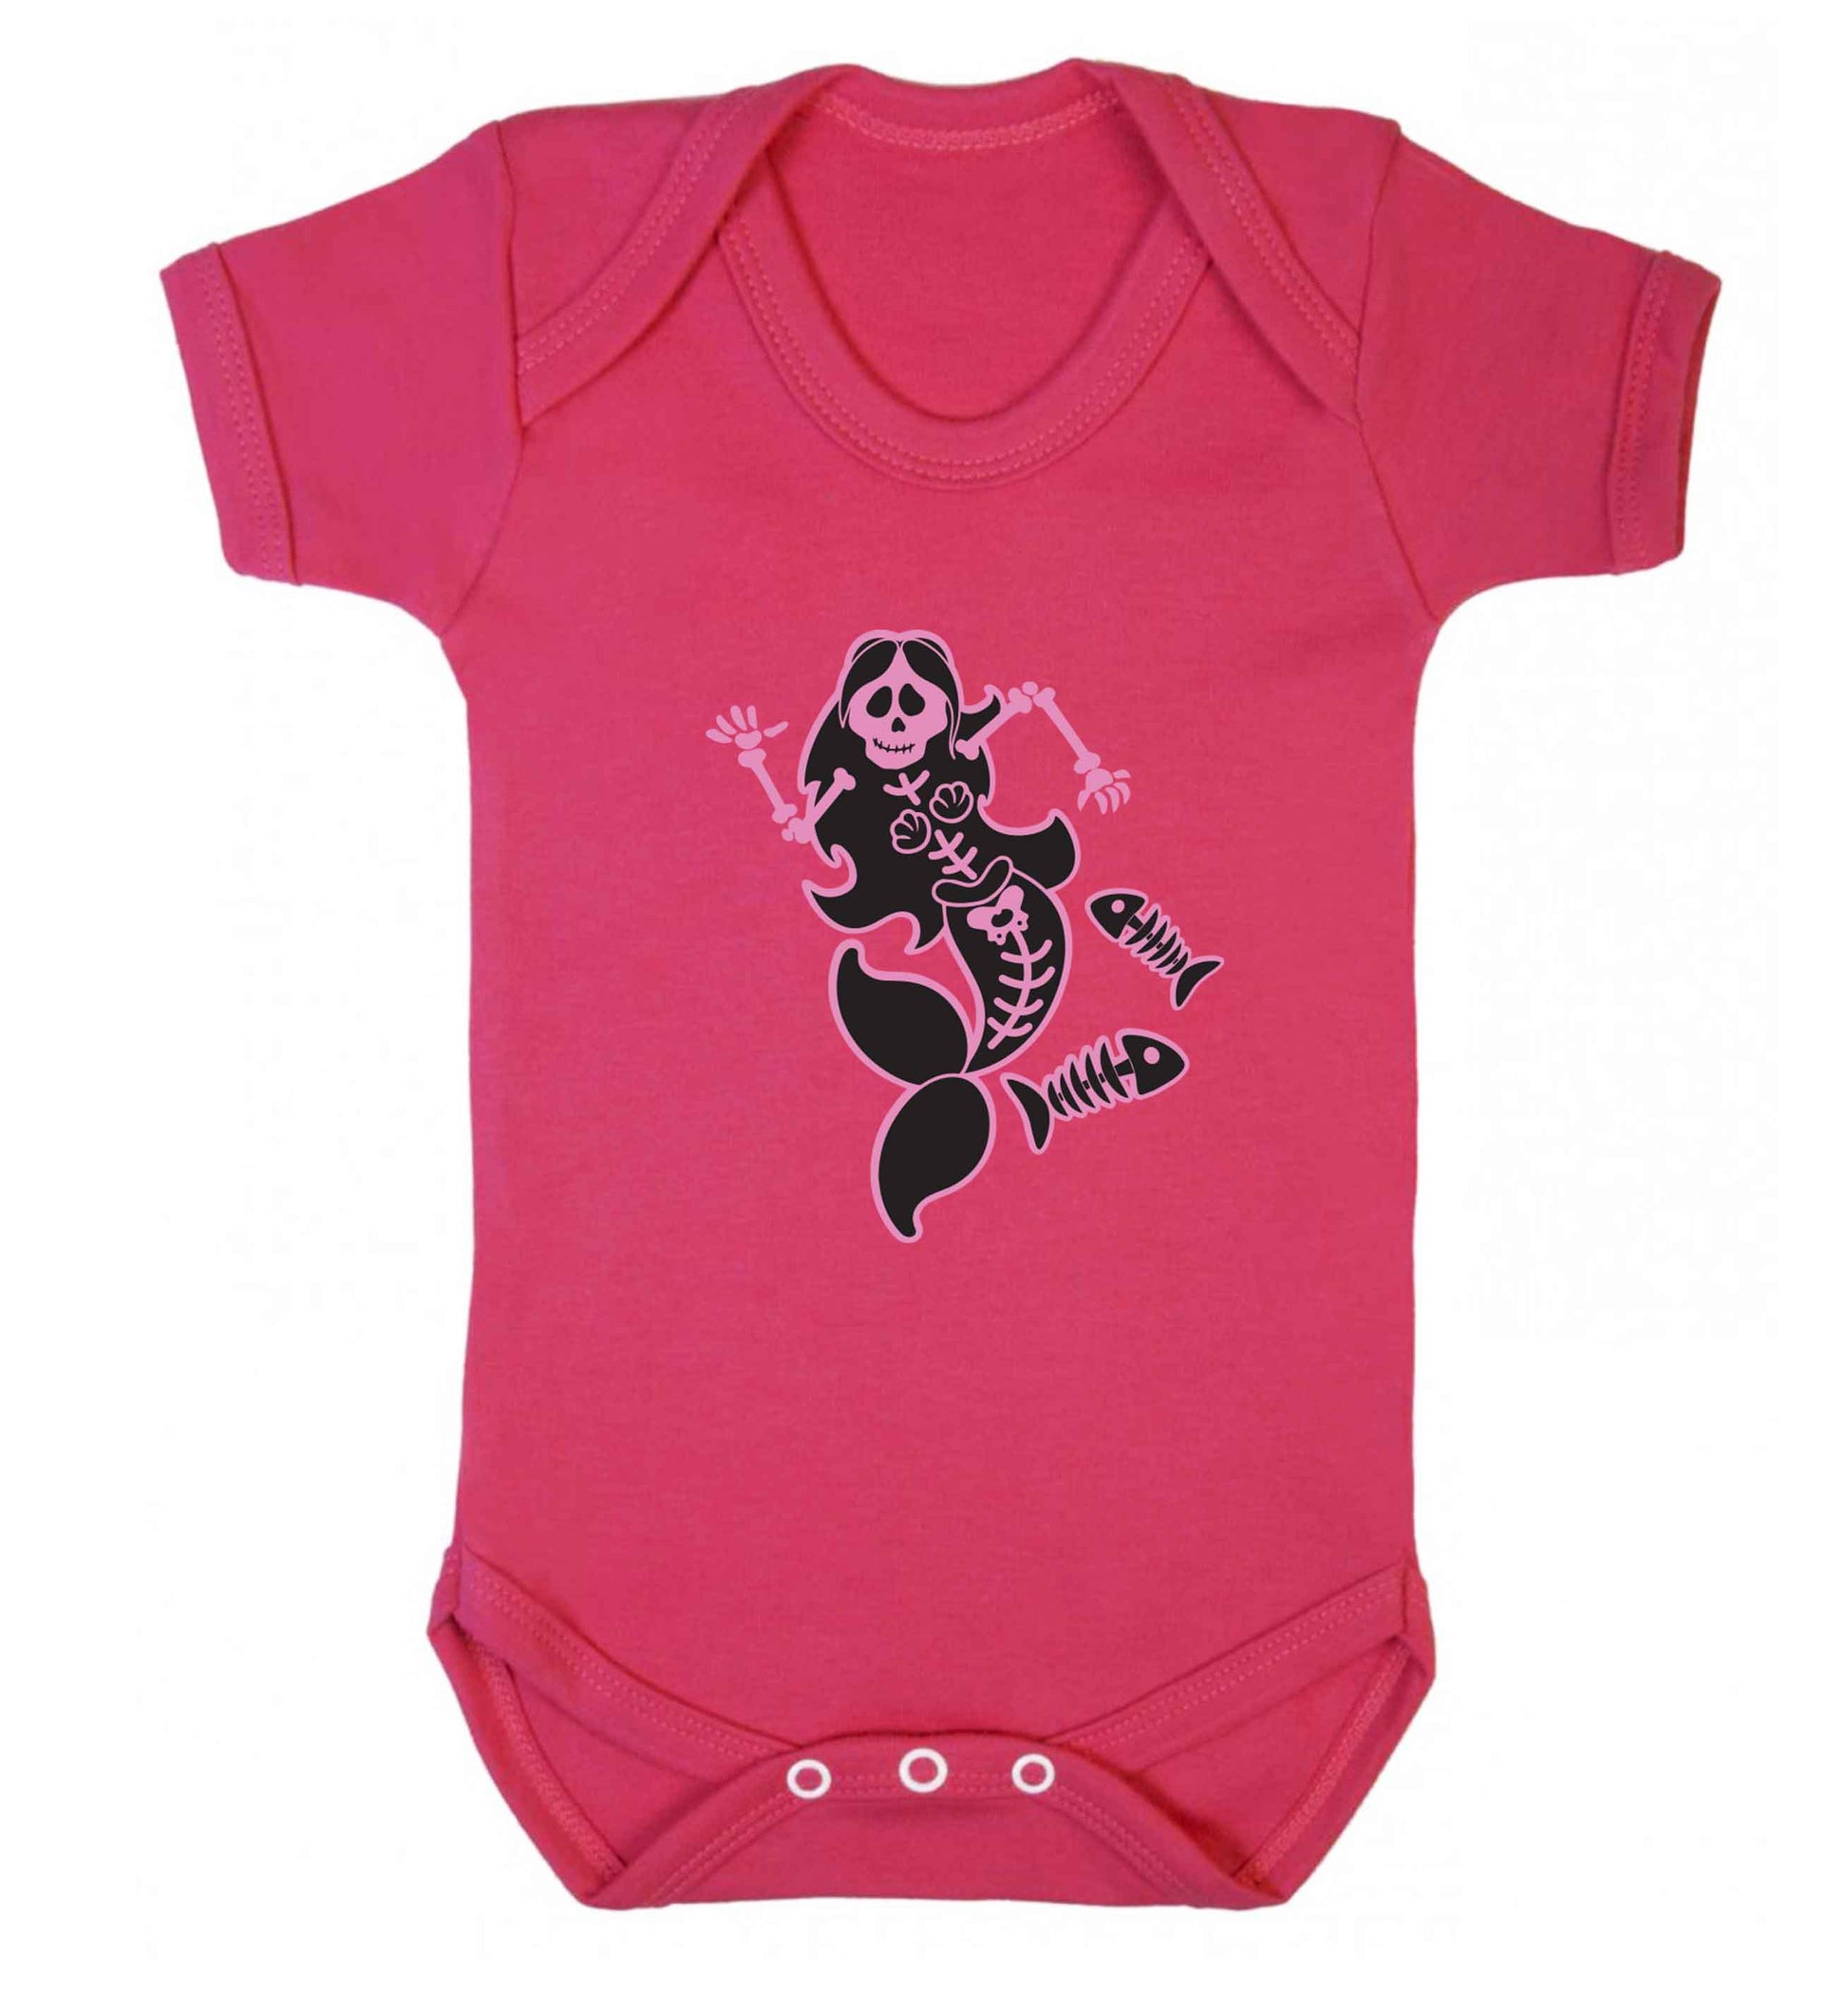 Skeleton mermaid baby vest dark pink 18-24 months